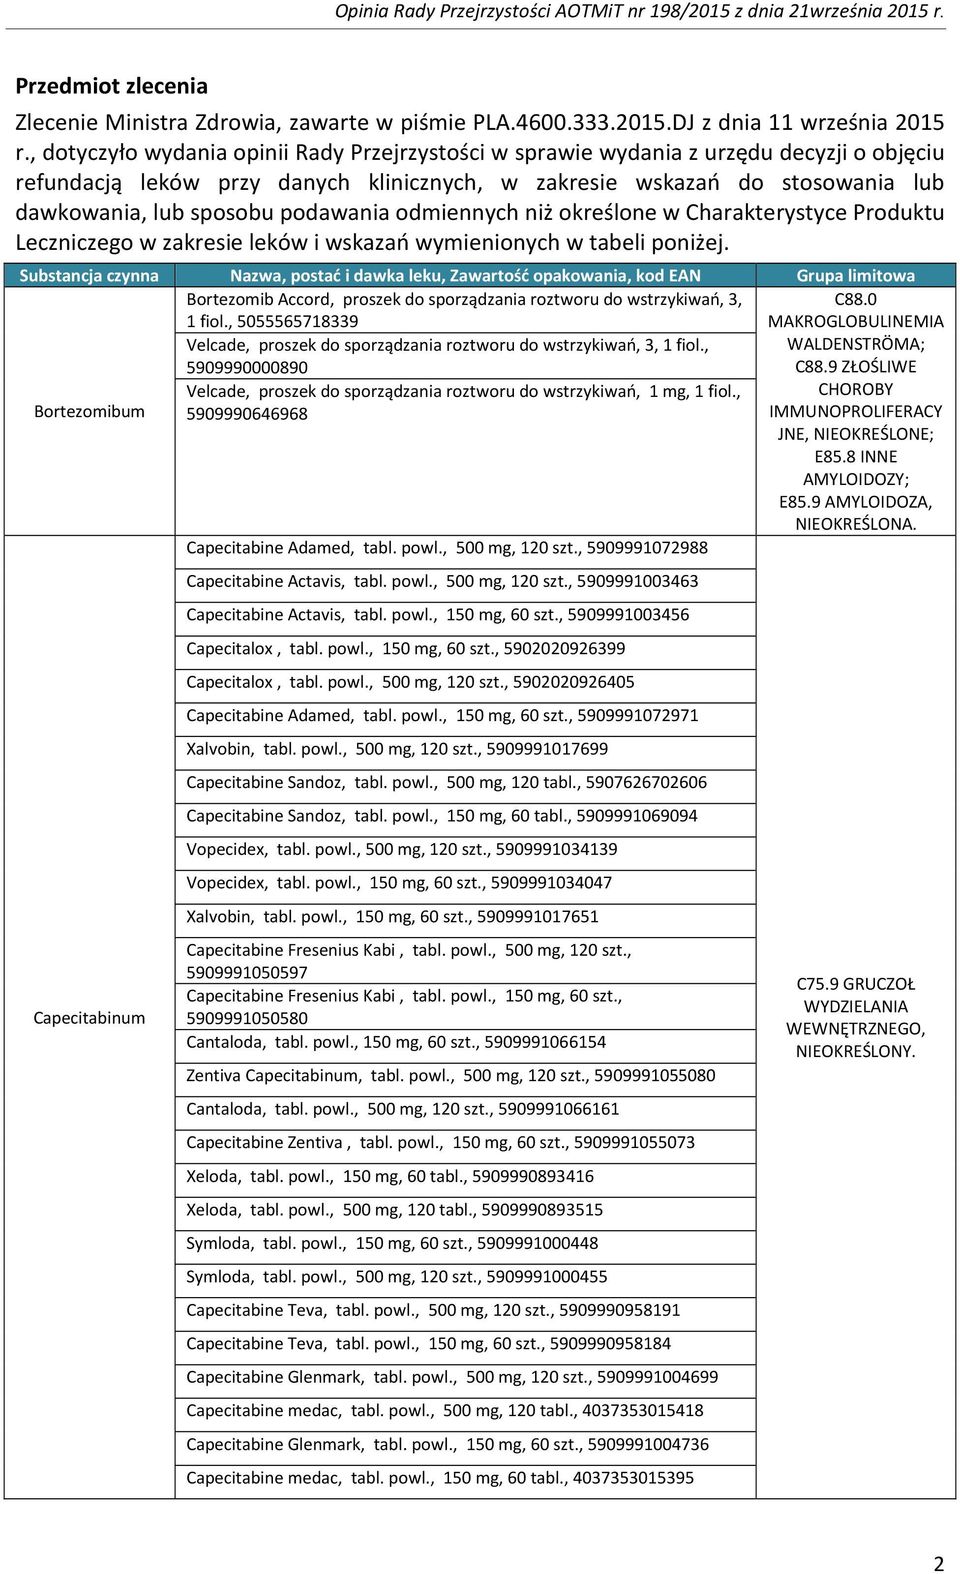 podawania odmiennych niż określone w Charakterystyce Produktu Leczniczego w zakresie leków i wskazań wymienionych w tabeli poniżej.